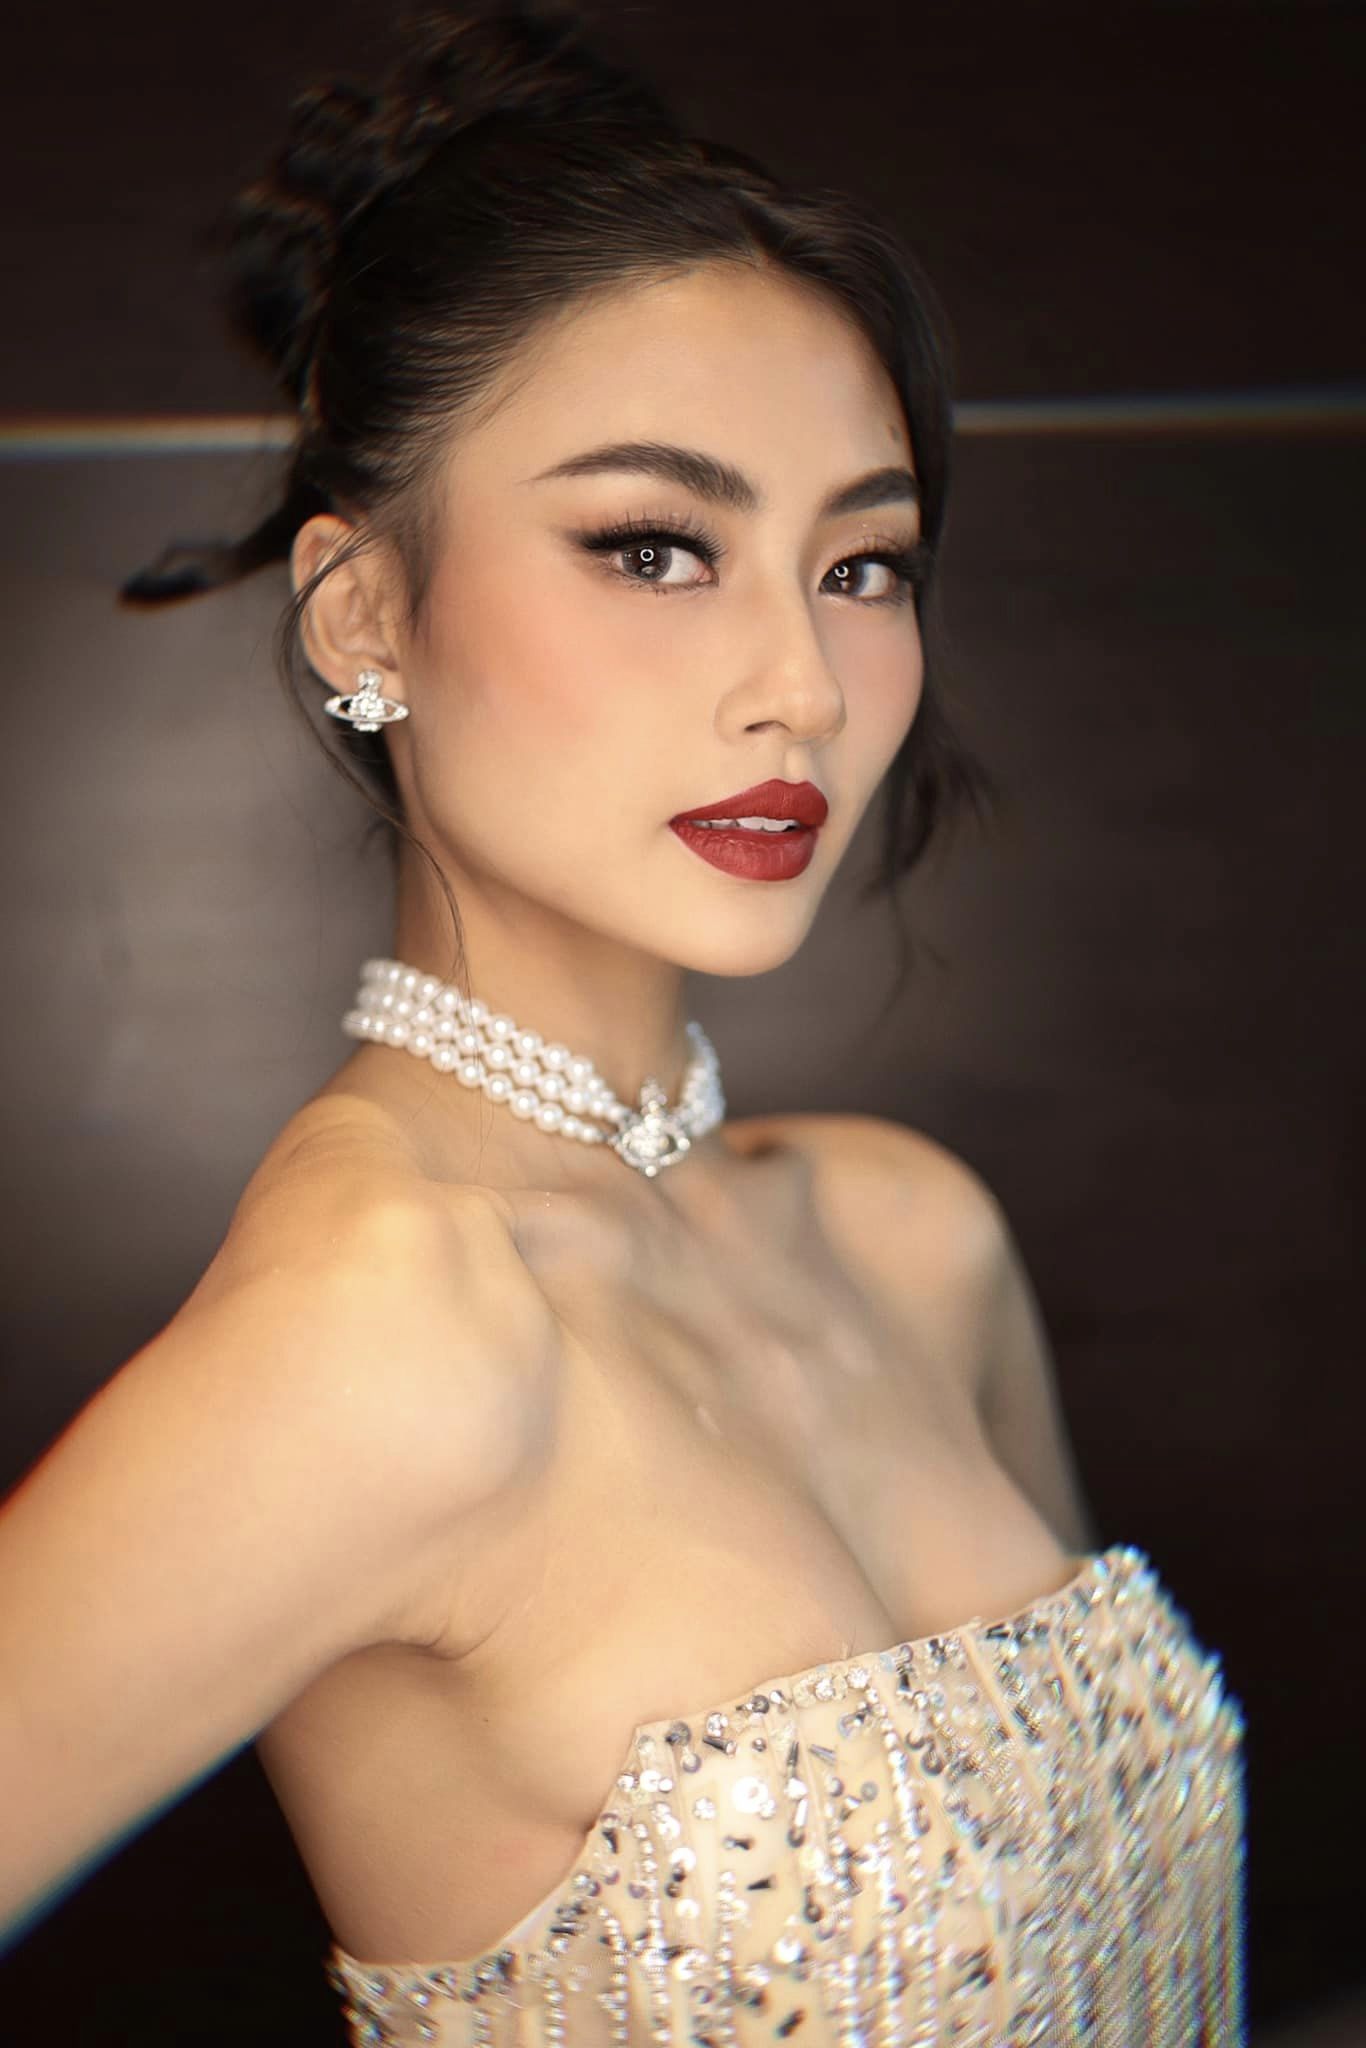 Tân Hoa hậu Hoàn vũ Việt Nam sinh năm 2001: Cựu học sinh trường chuyên, Á quân một cuộc thi nổi tiếng và là trò cưng của Vũ Thu Phương- Ảnh 4.